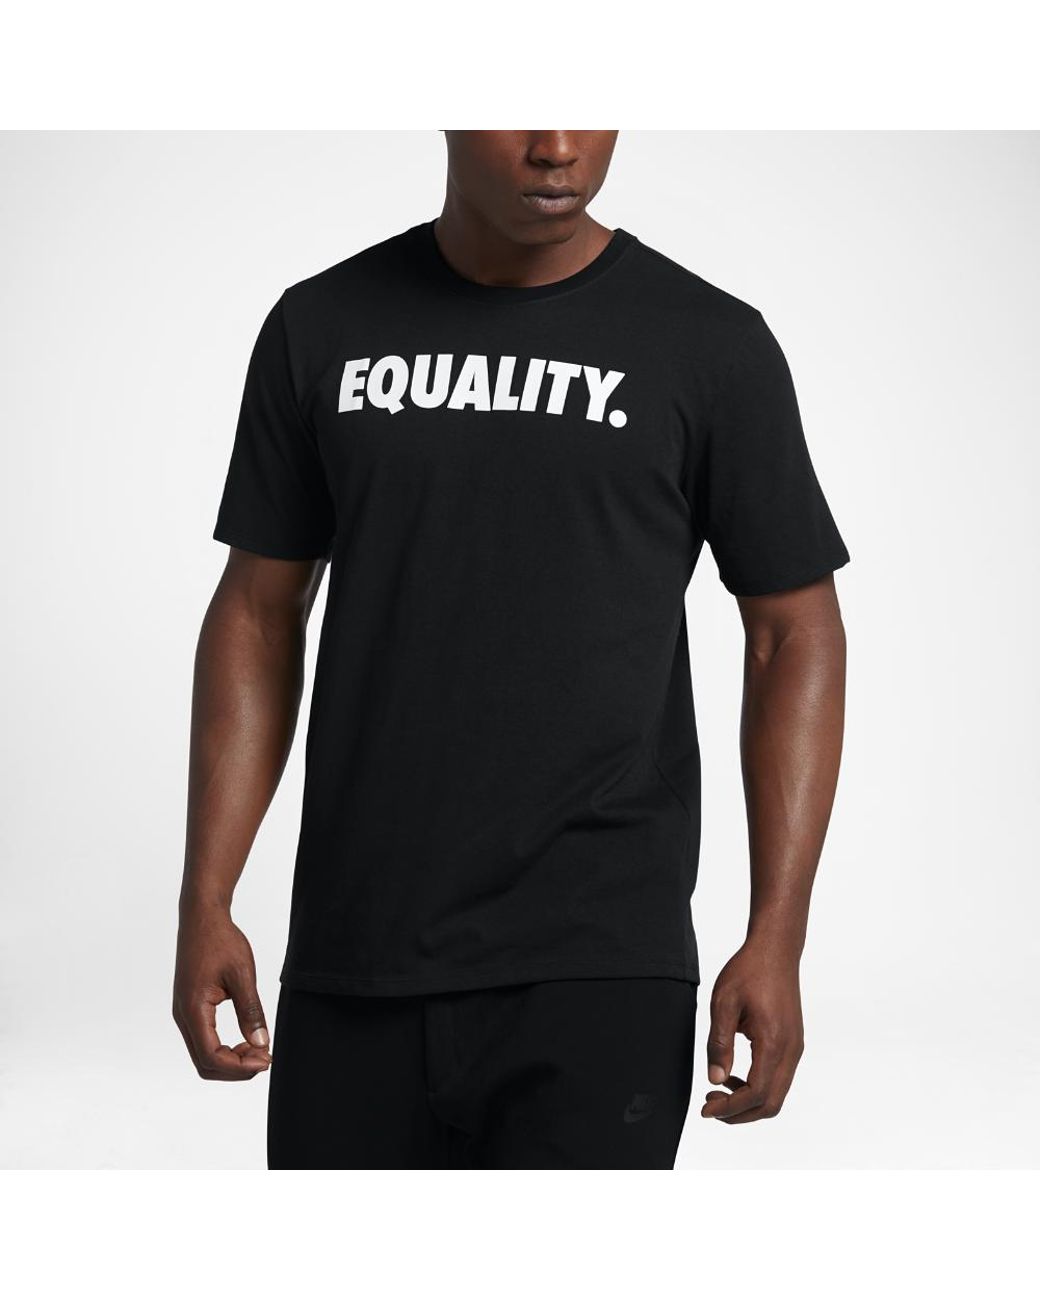 新品 NIKE EQUALITY Tシャツ ブラックゴールド